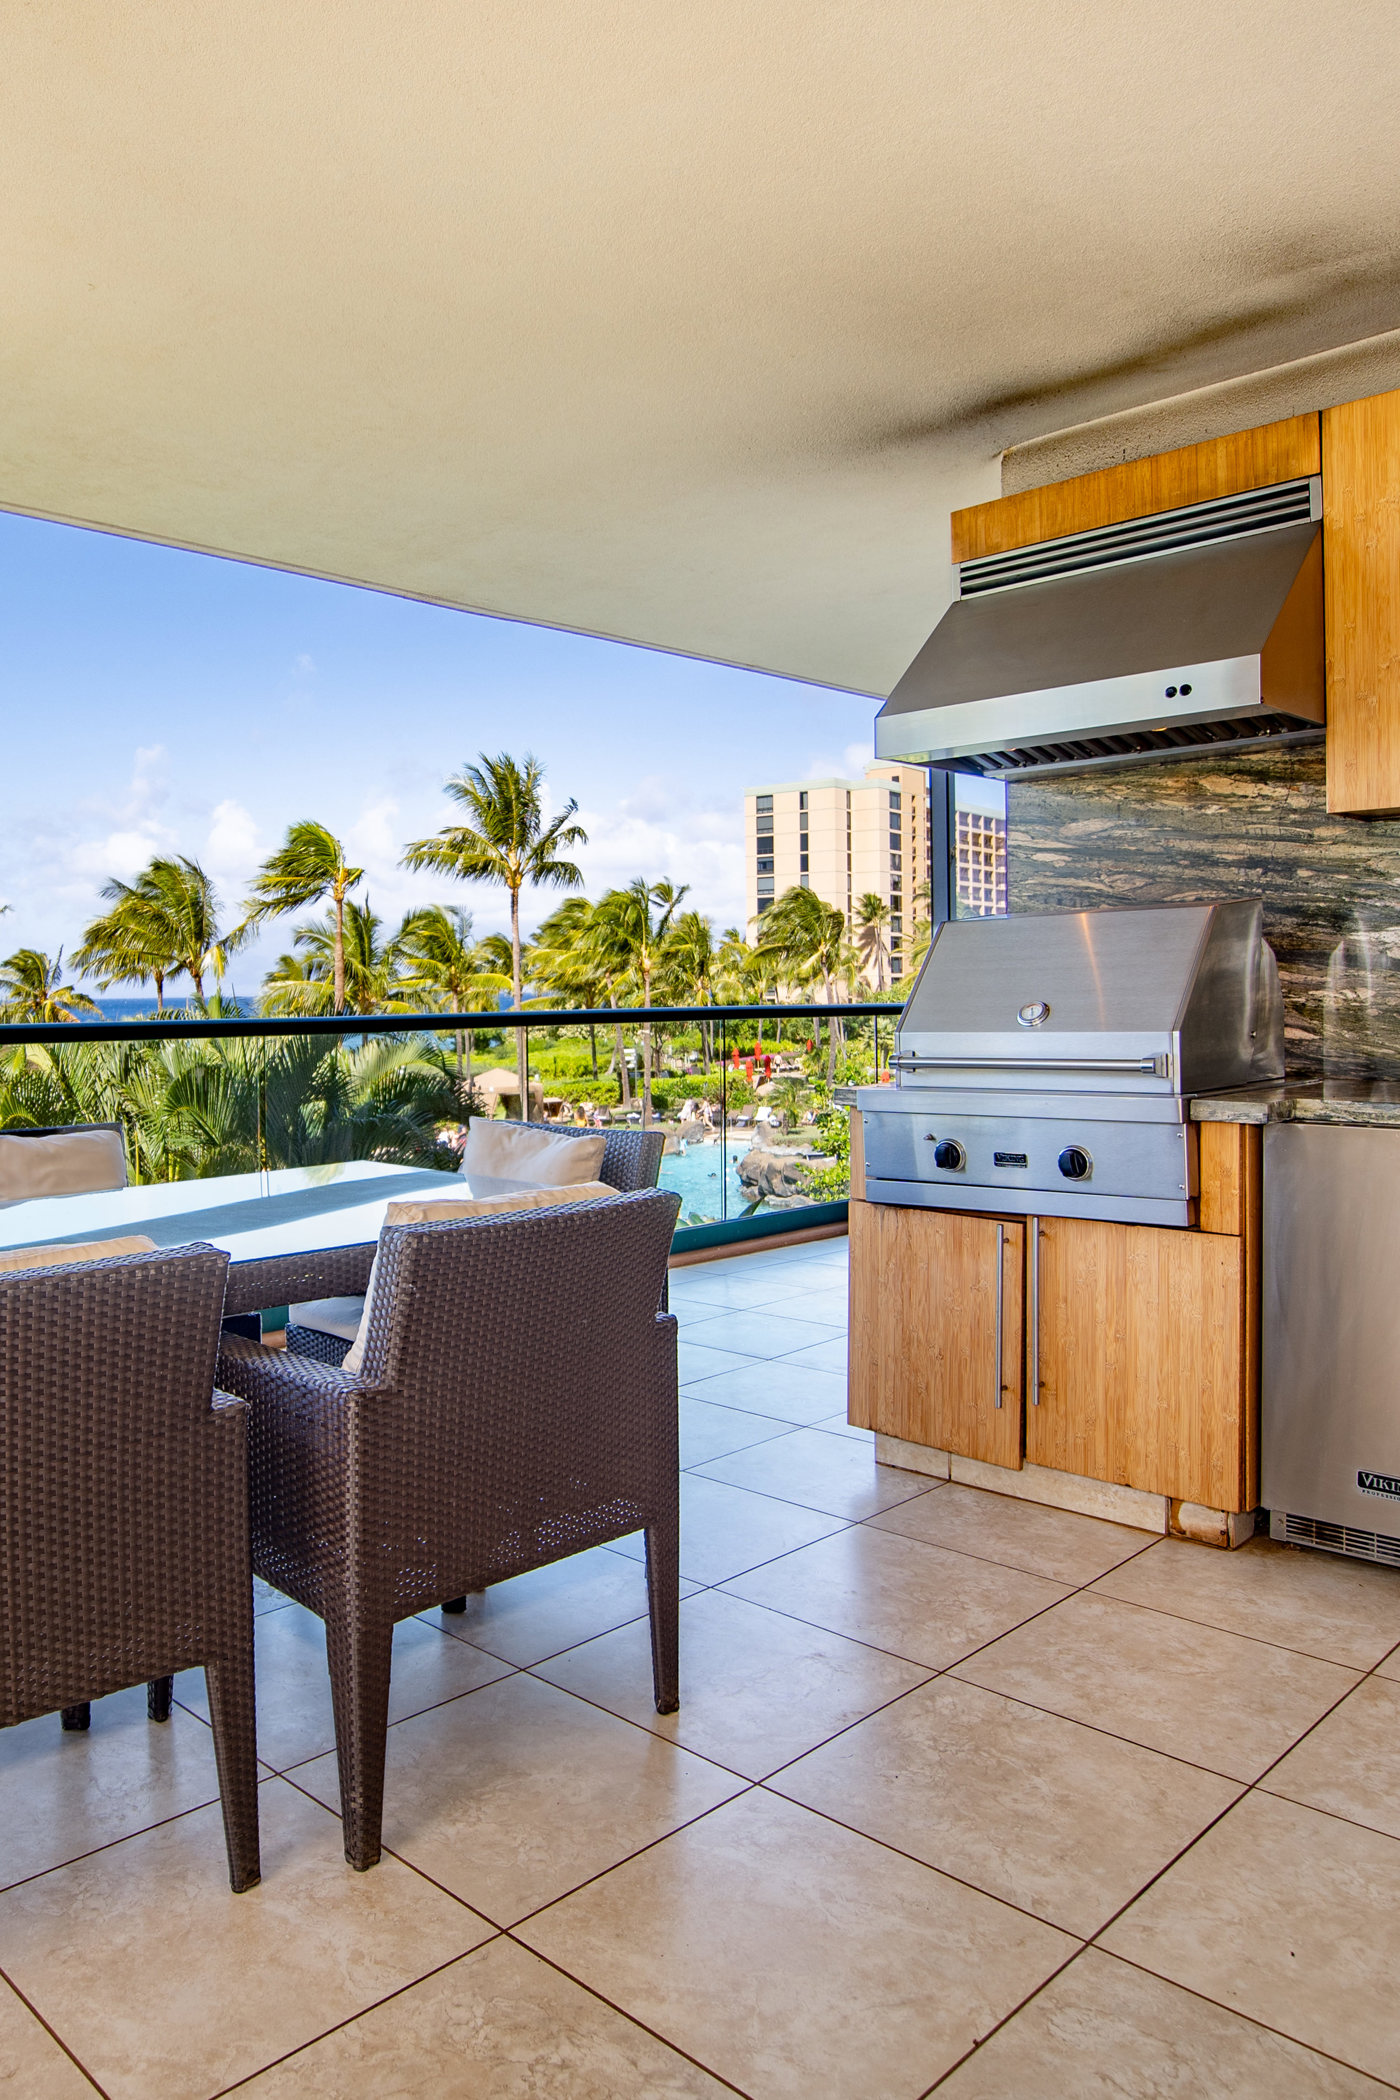 Honua Kai Maui balcony with grill